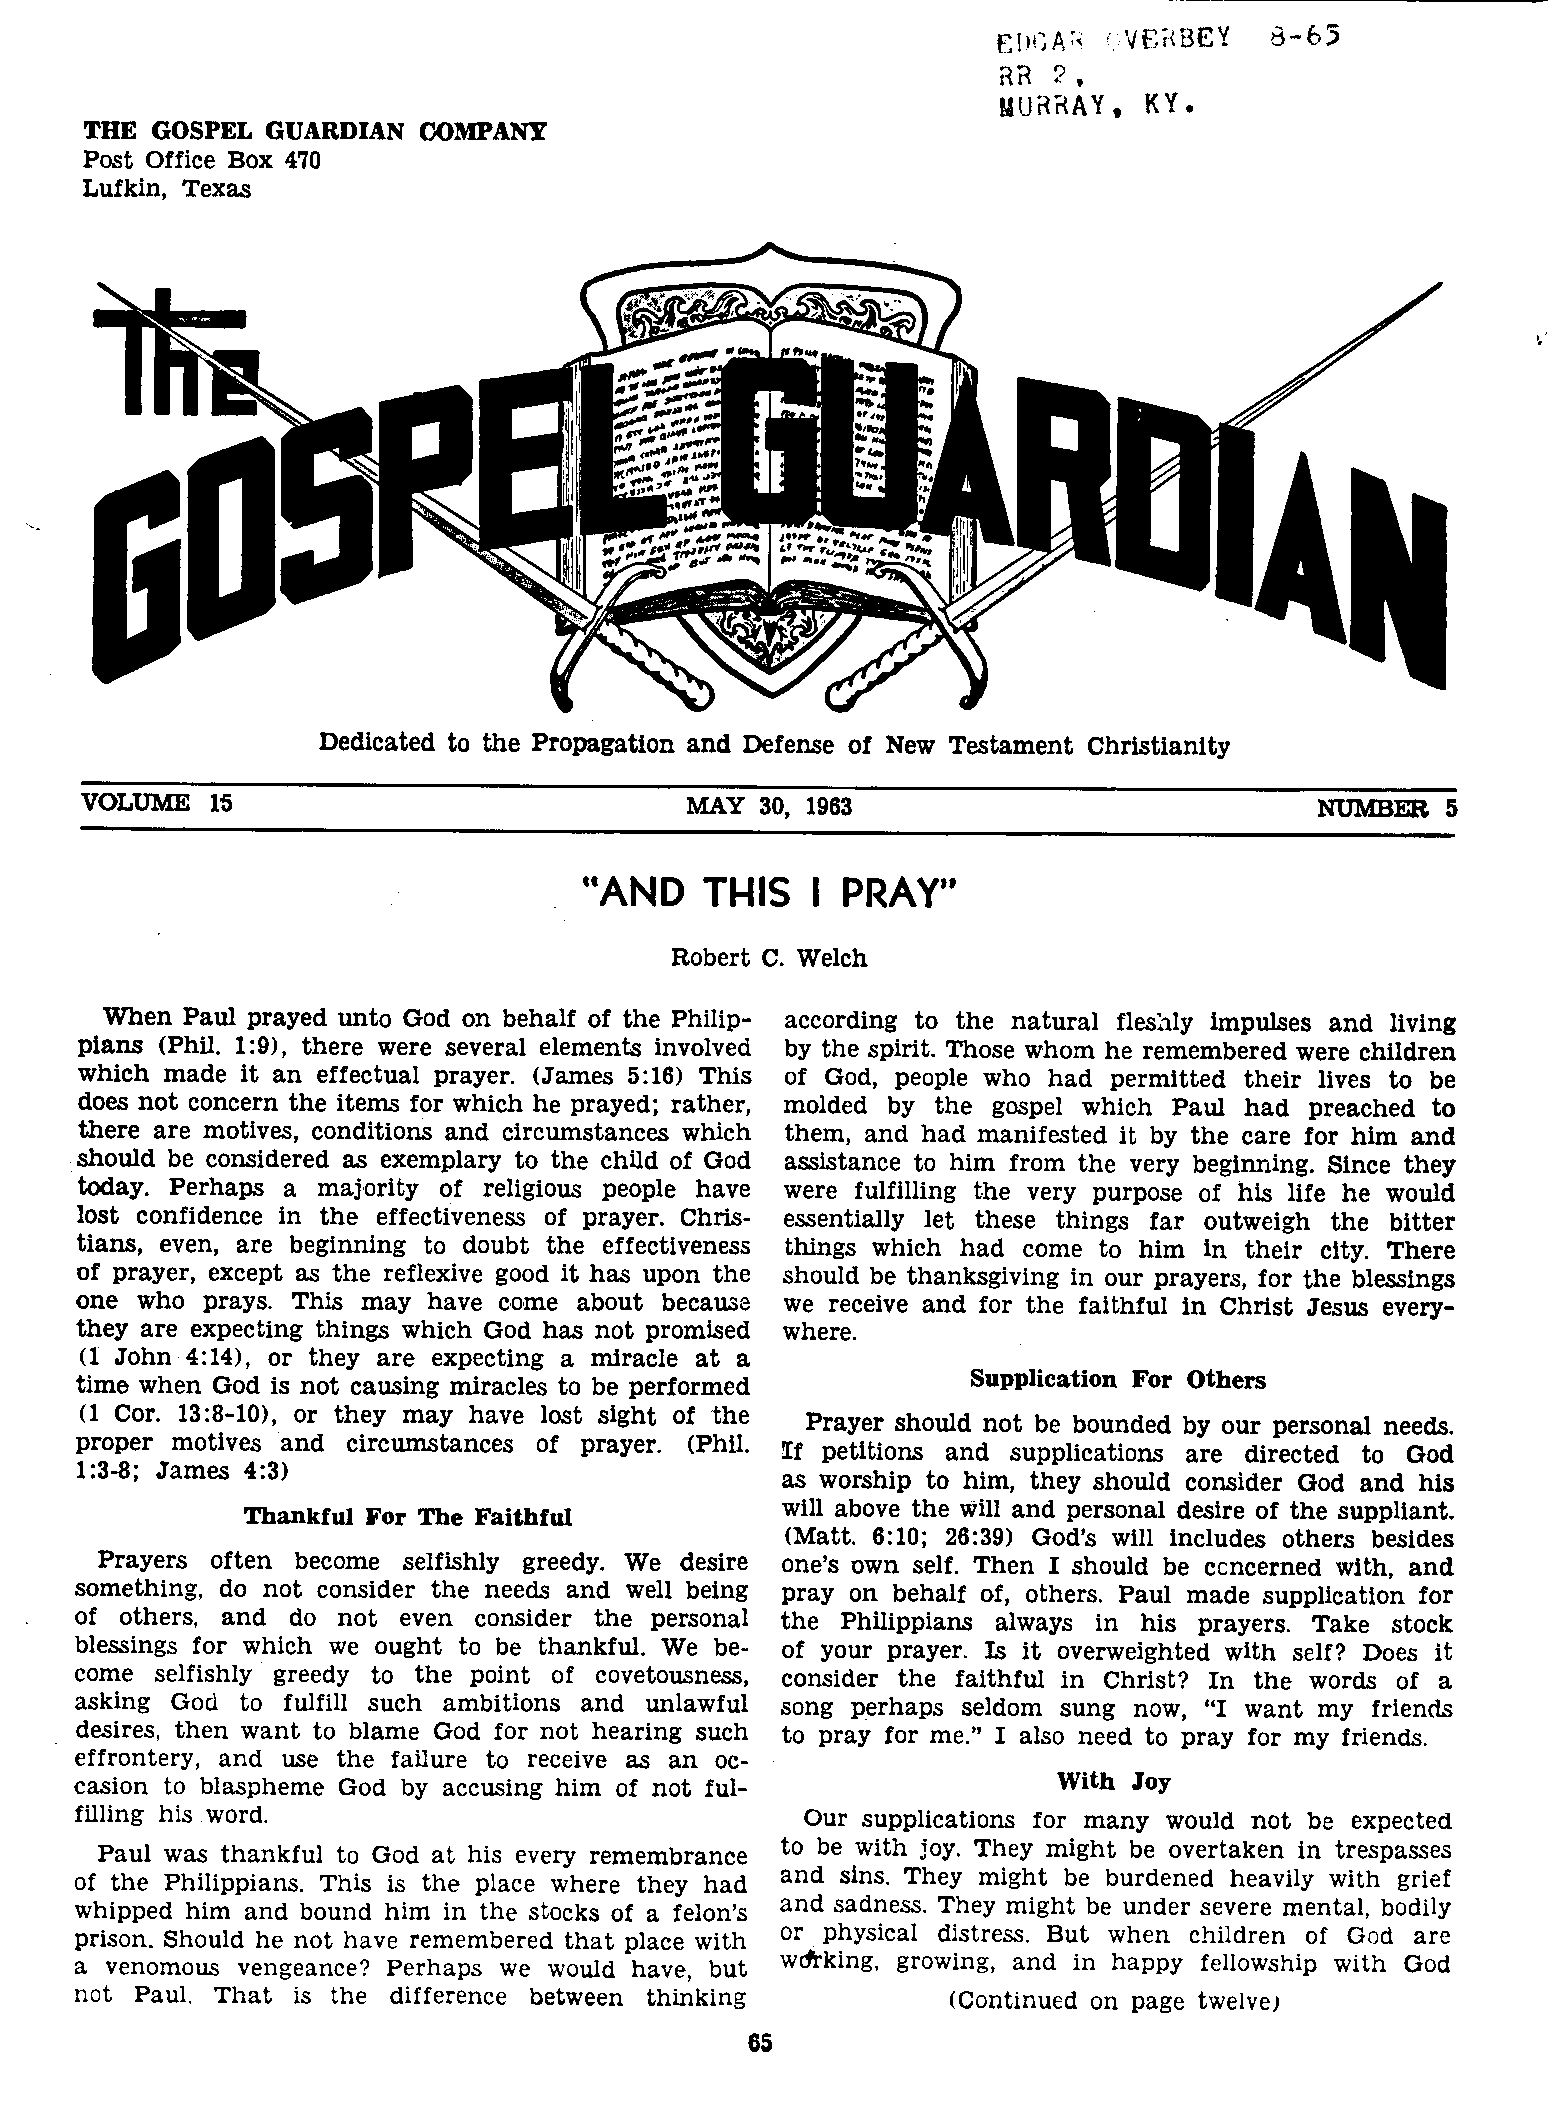 Gospel Guardian Original: Vol.15 No.5 Pg.1